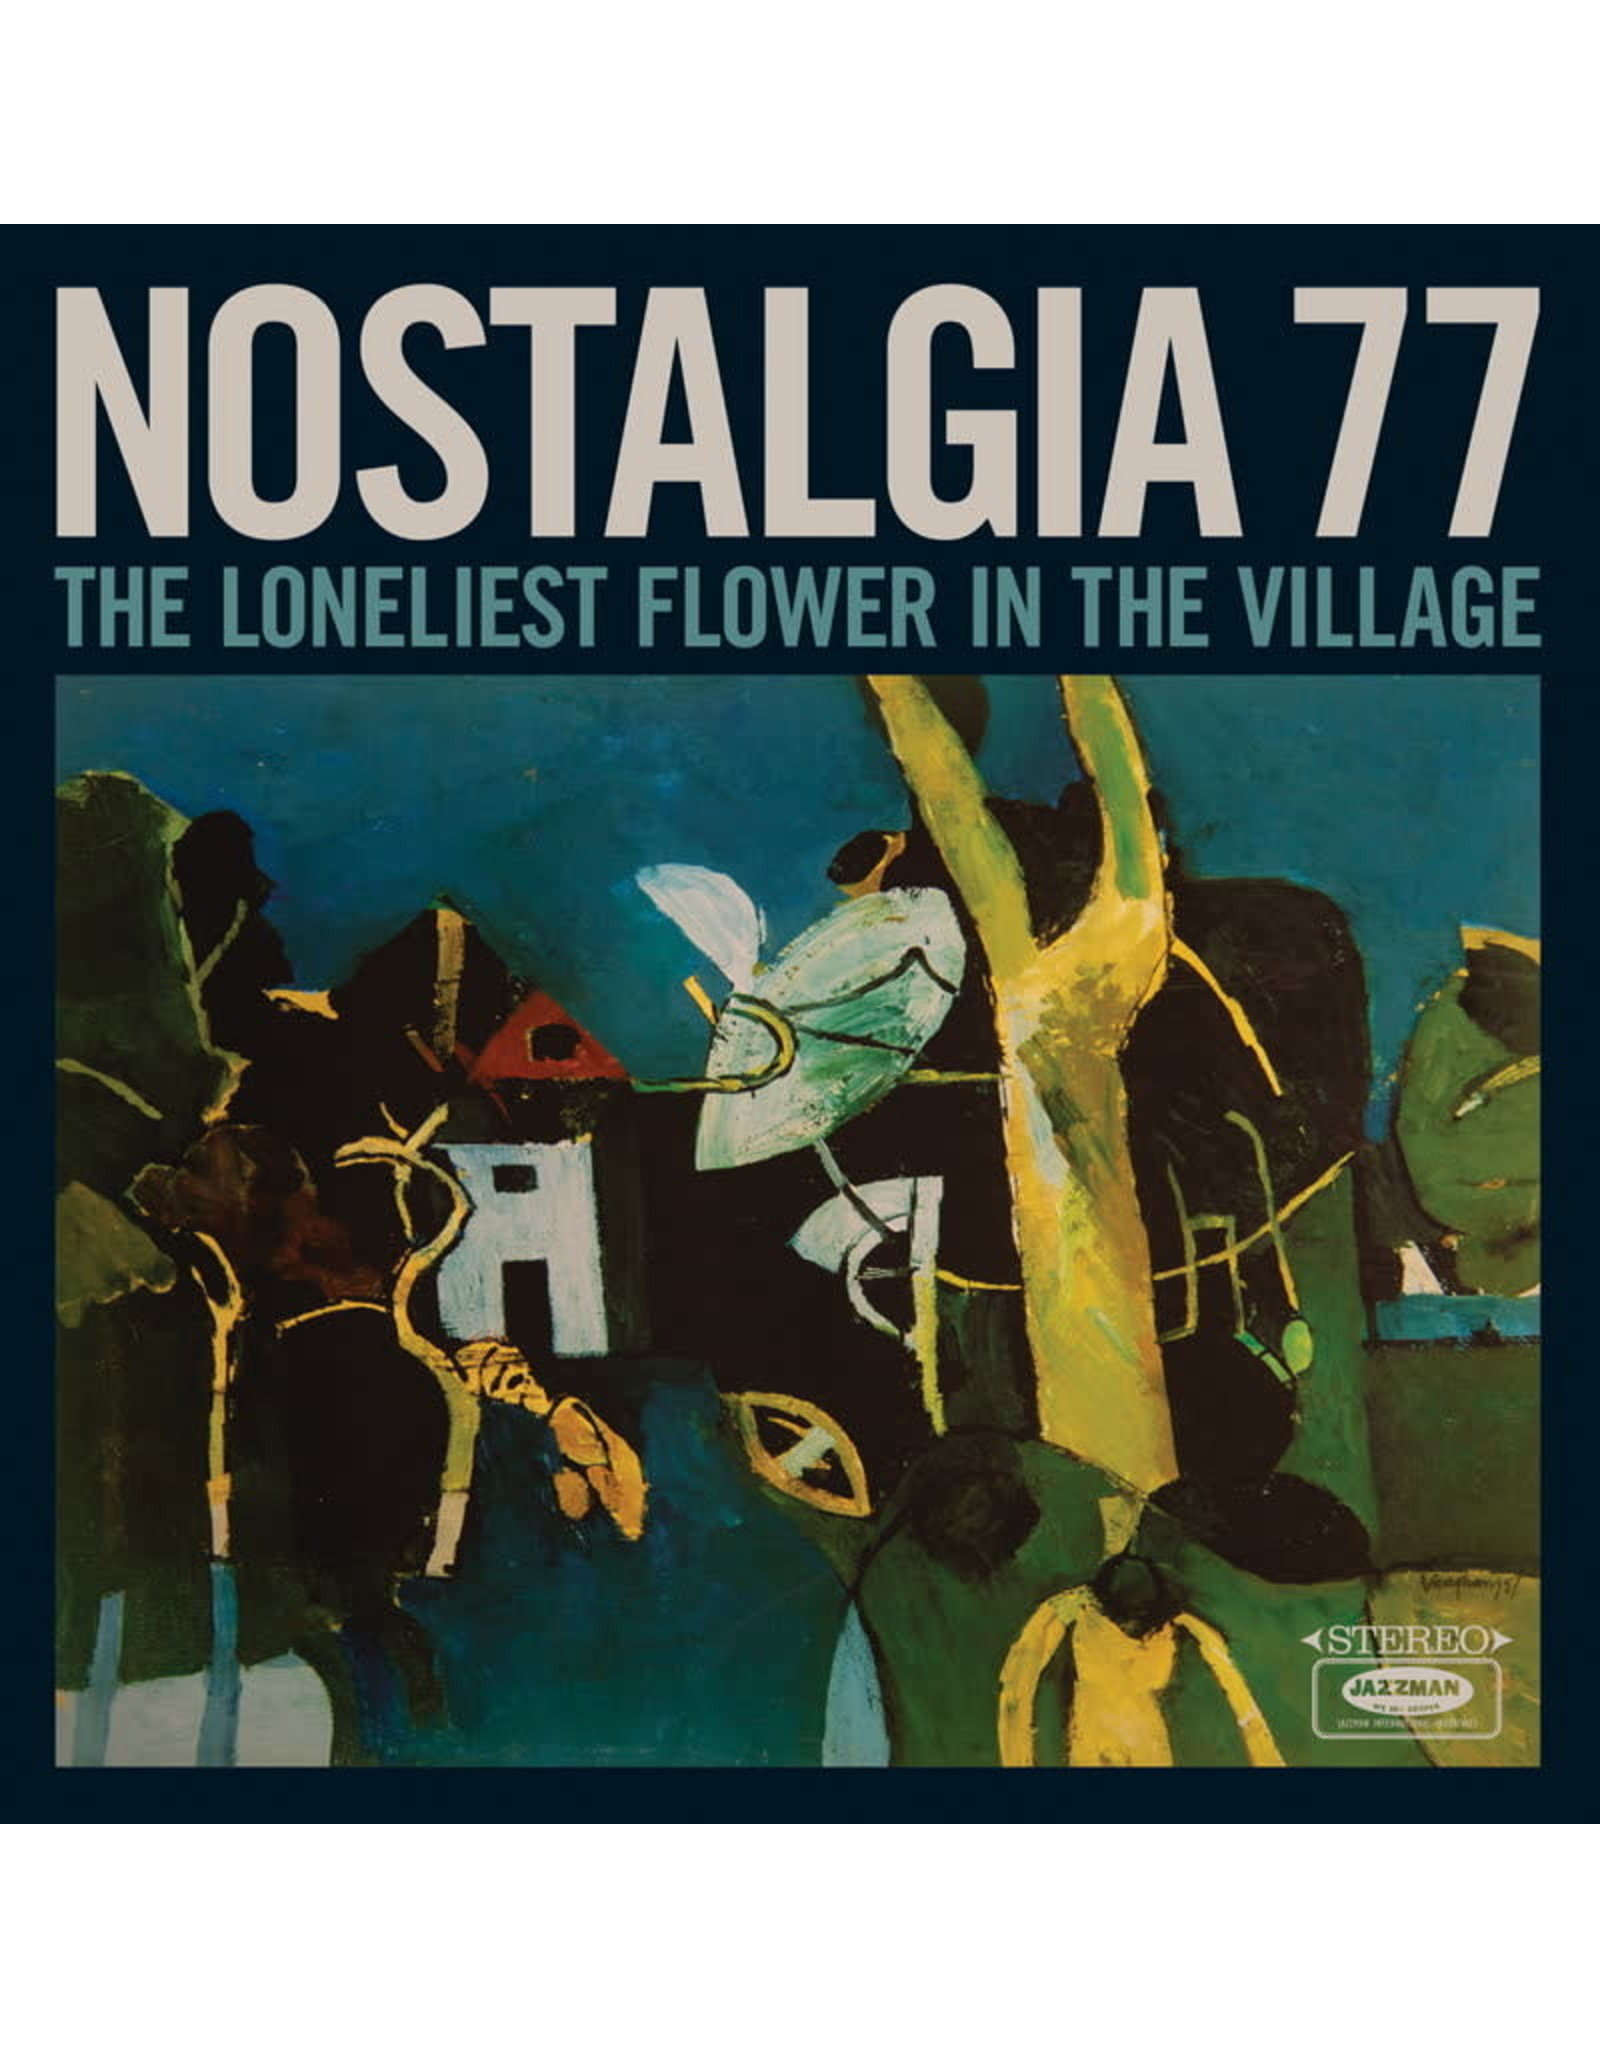 Jazzman Nostalgia 77: The Loneliest Flower in the Village LP